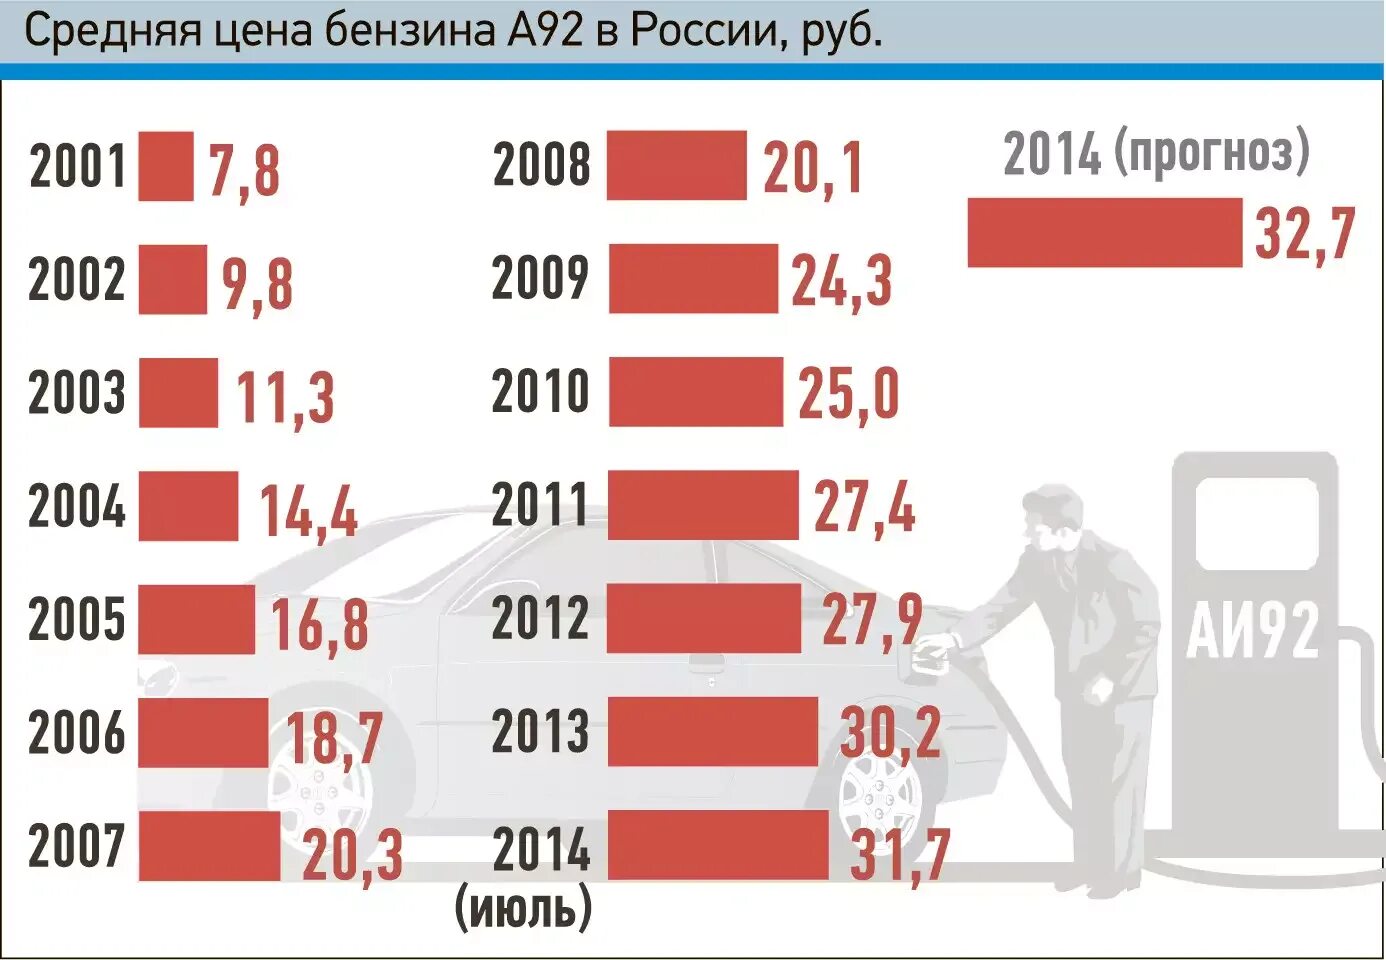 14 год сколько лет назад. Сколько стоил бензин в 2003 году. Сколько стоил бензин в 2001 году в России. Сколько стоил бензин в России. Стоимость бензина в 2003 году.